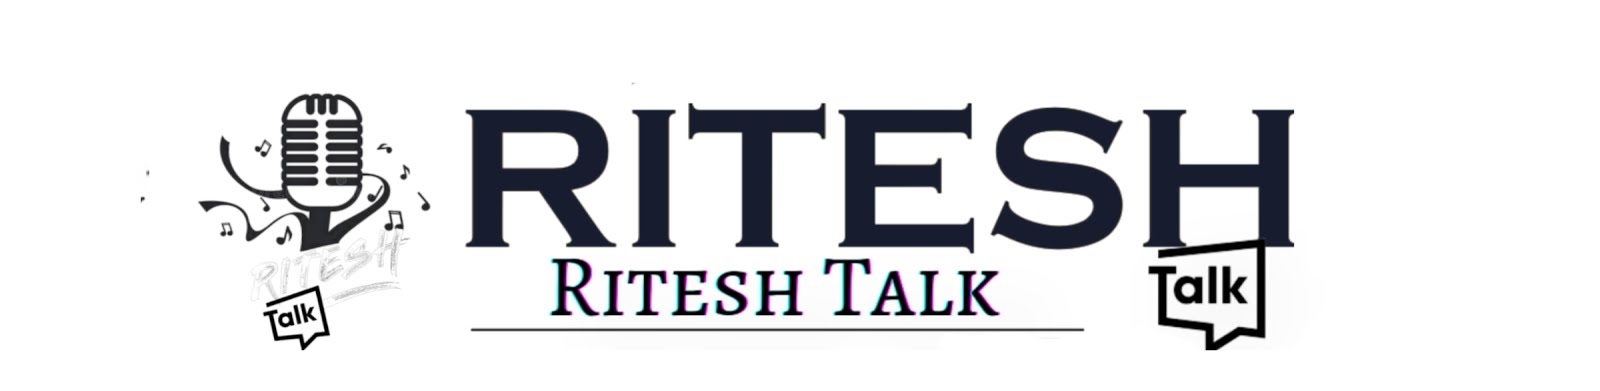 Ritesh Talk